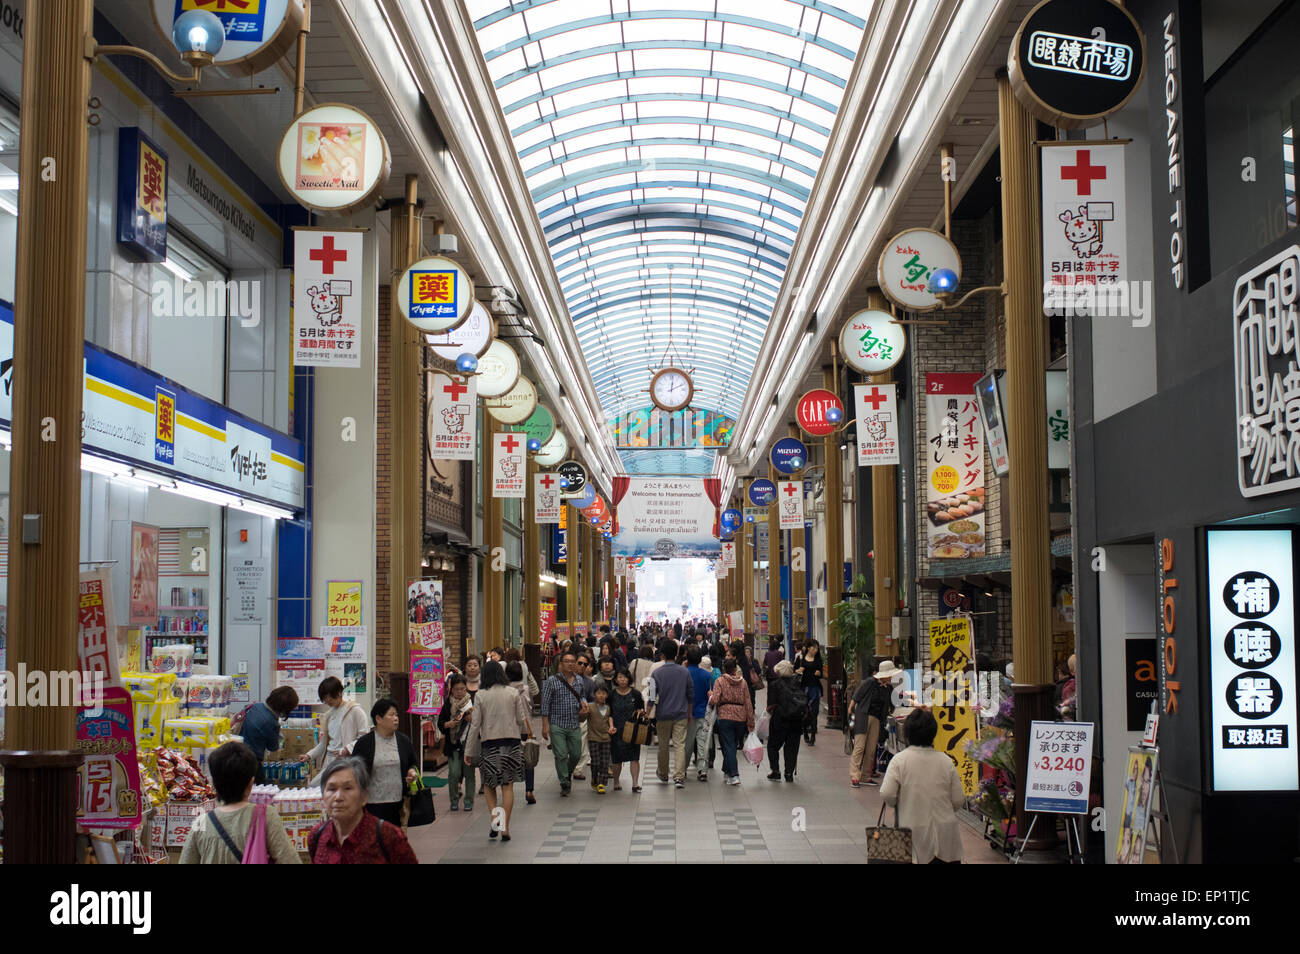 Hamanmachi Shopping Arcade, Nagasaki, Japón Foto de stock